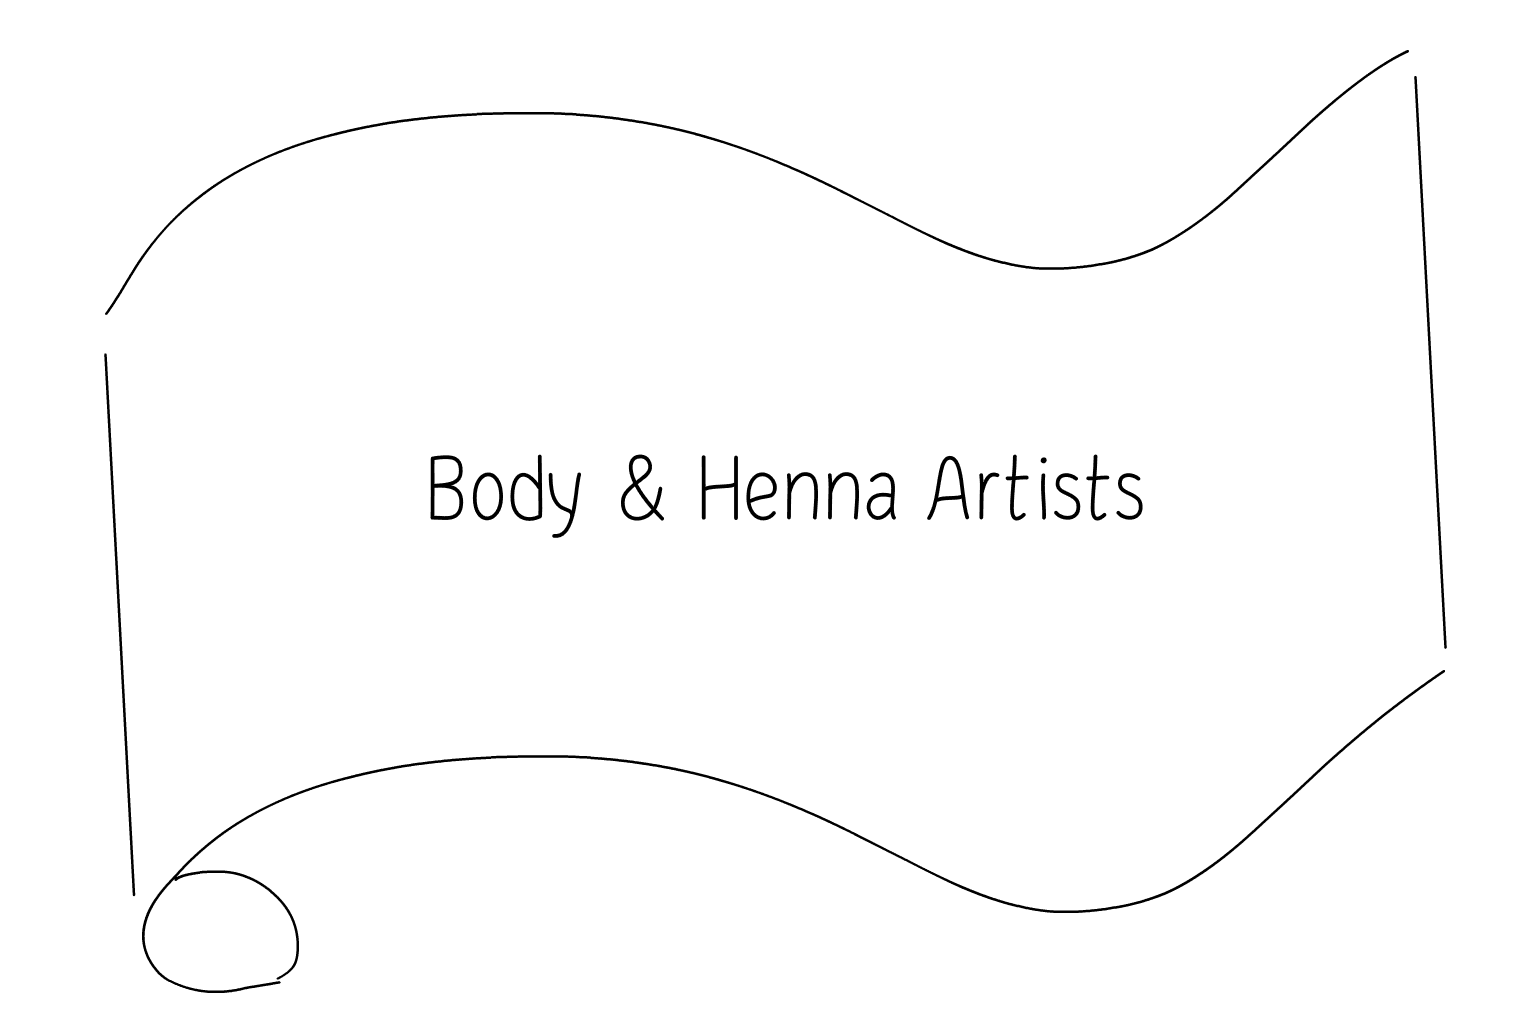 Illustration de Artistes du corps et du henné